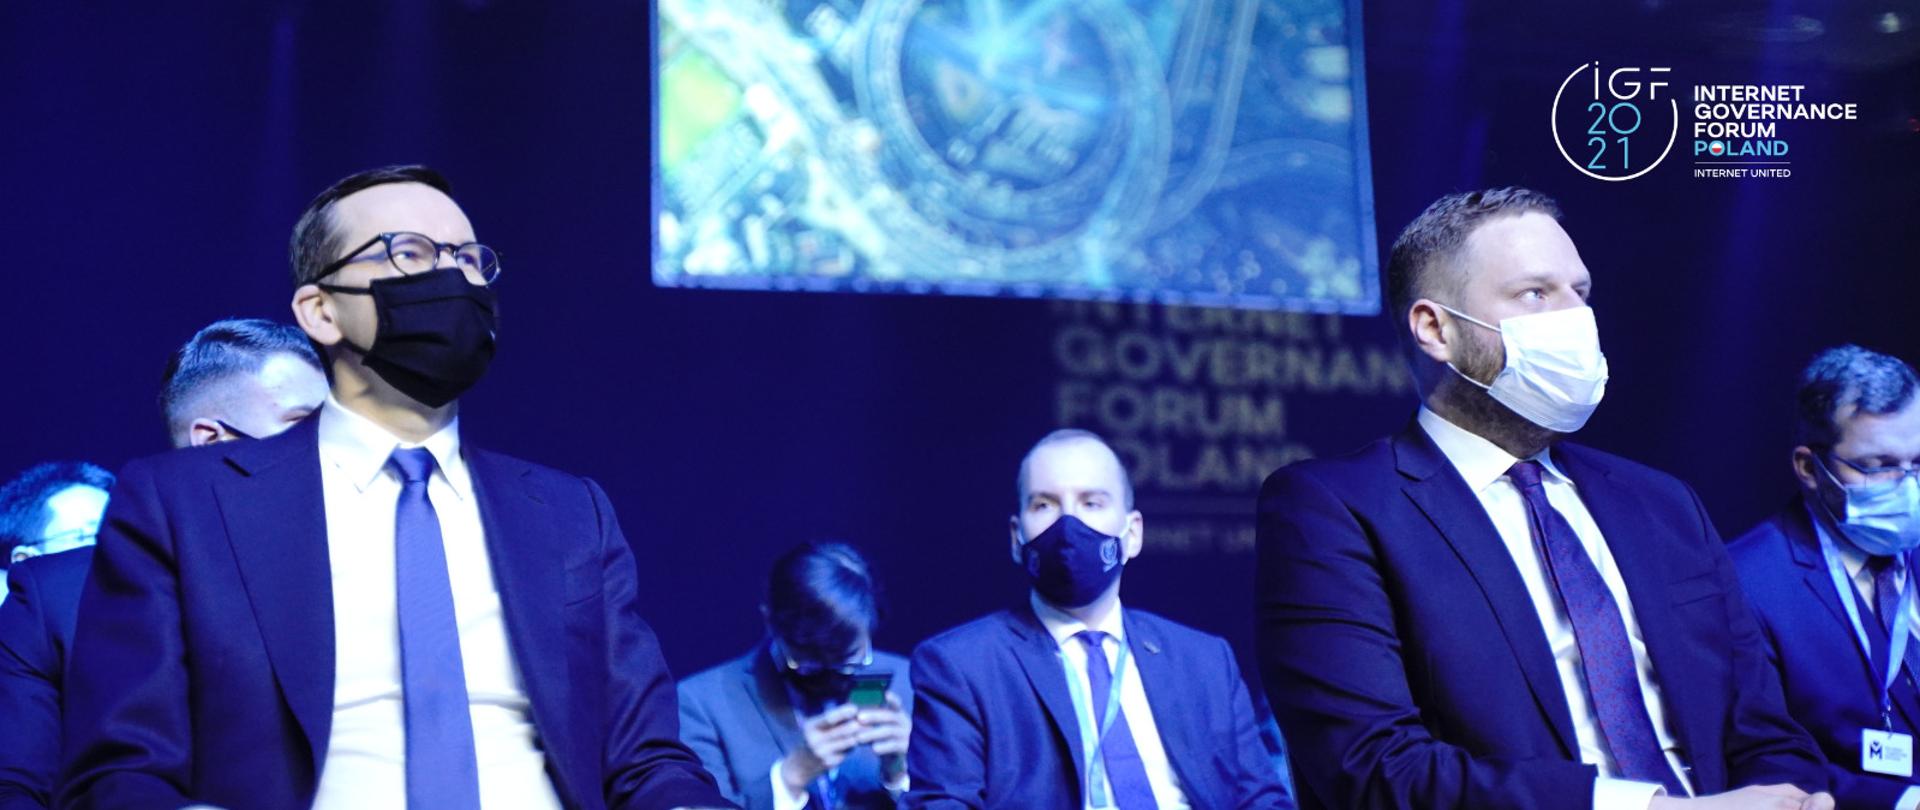 Premier Mateusz Morawiecki oraz ministrowie Janusz Cieszyński i Adam Andruszkiewicz podczas ceremonii otwarcia Szczytu Cyfrowego ONZ - IGF2021 w Katowicach.